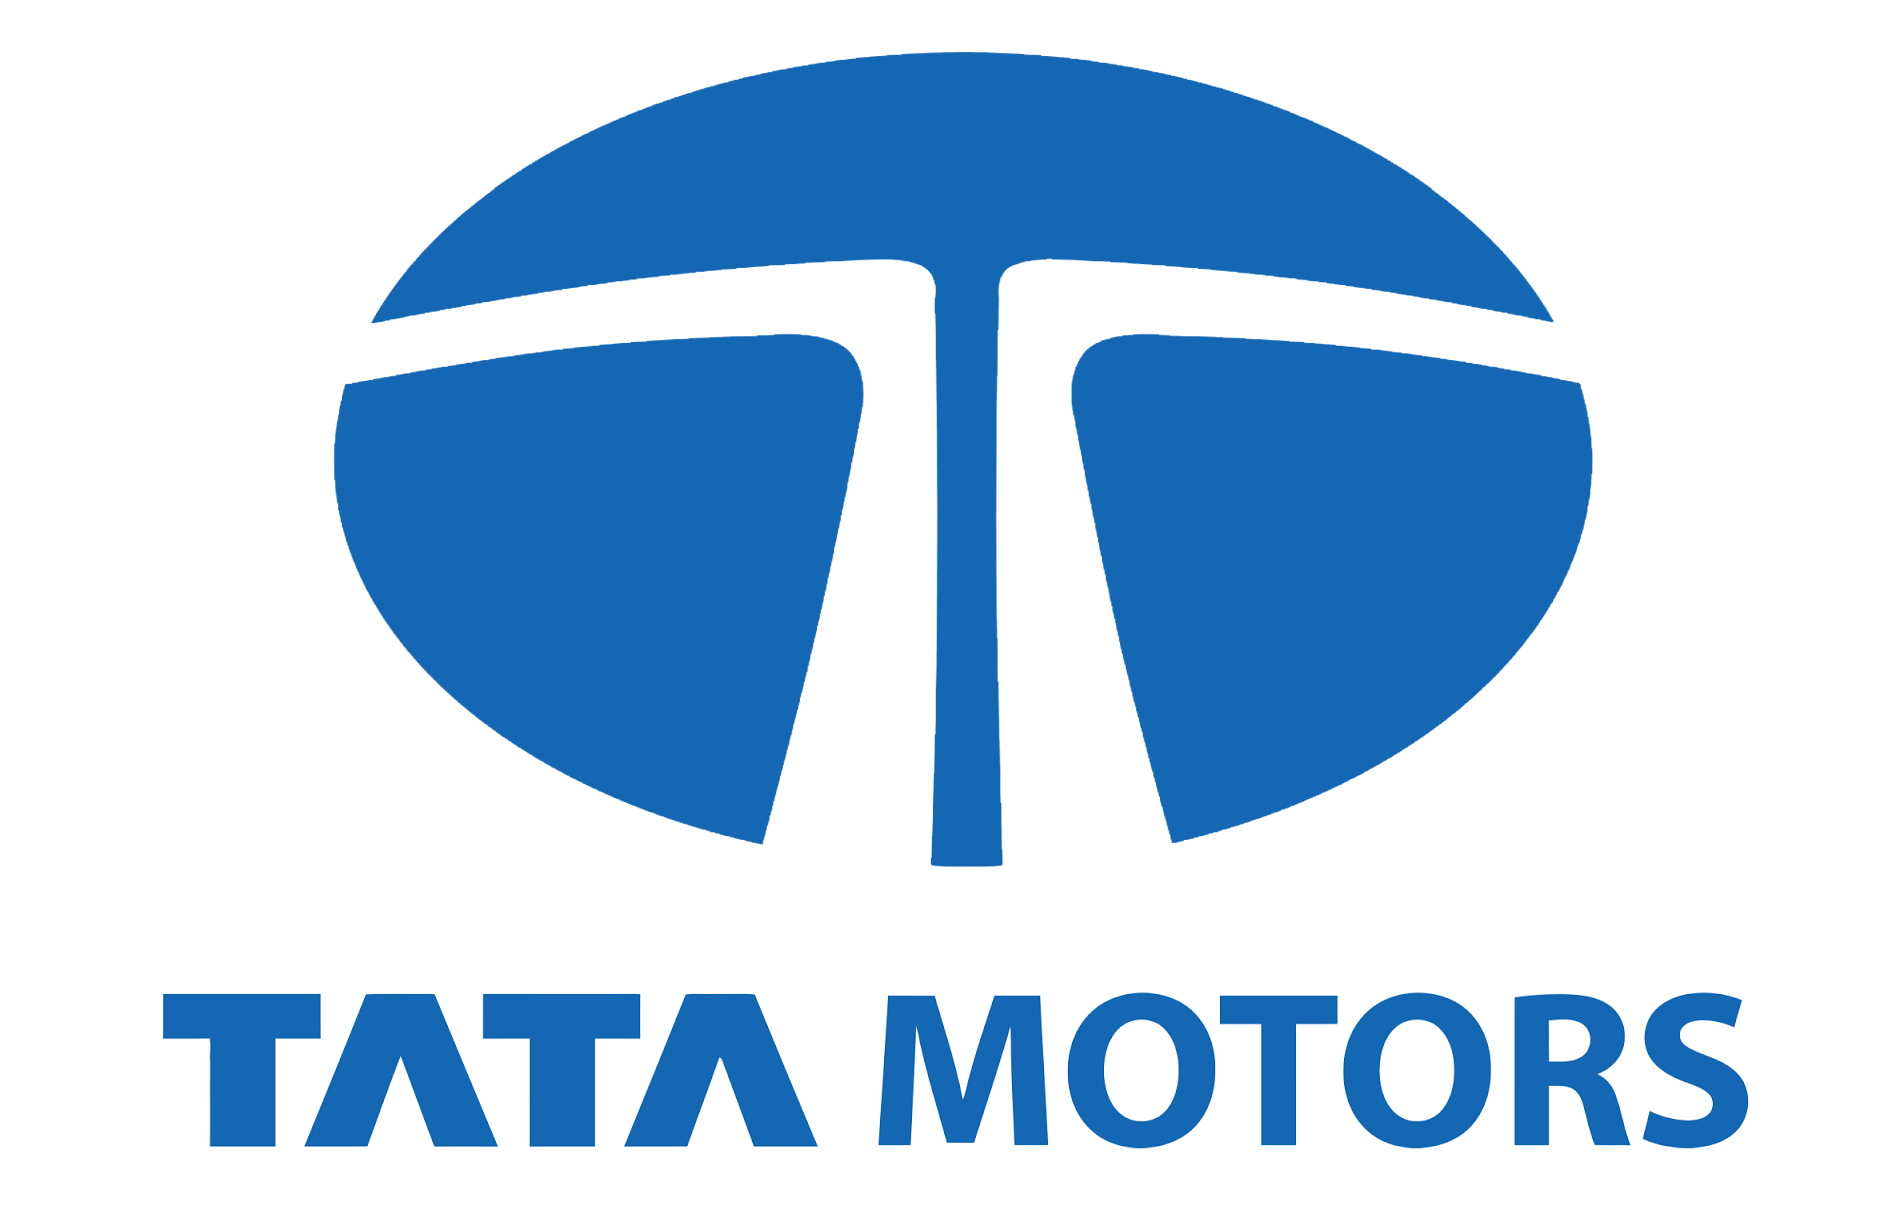 Tata Motors Cars Service Centre - Select Motors|Show Room|Automotive